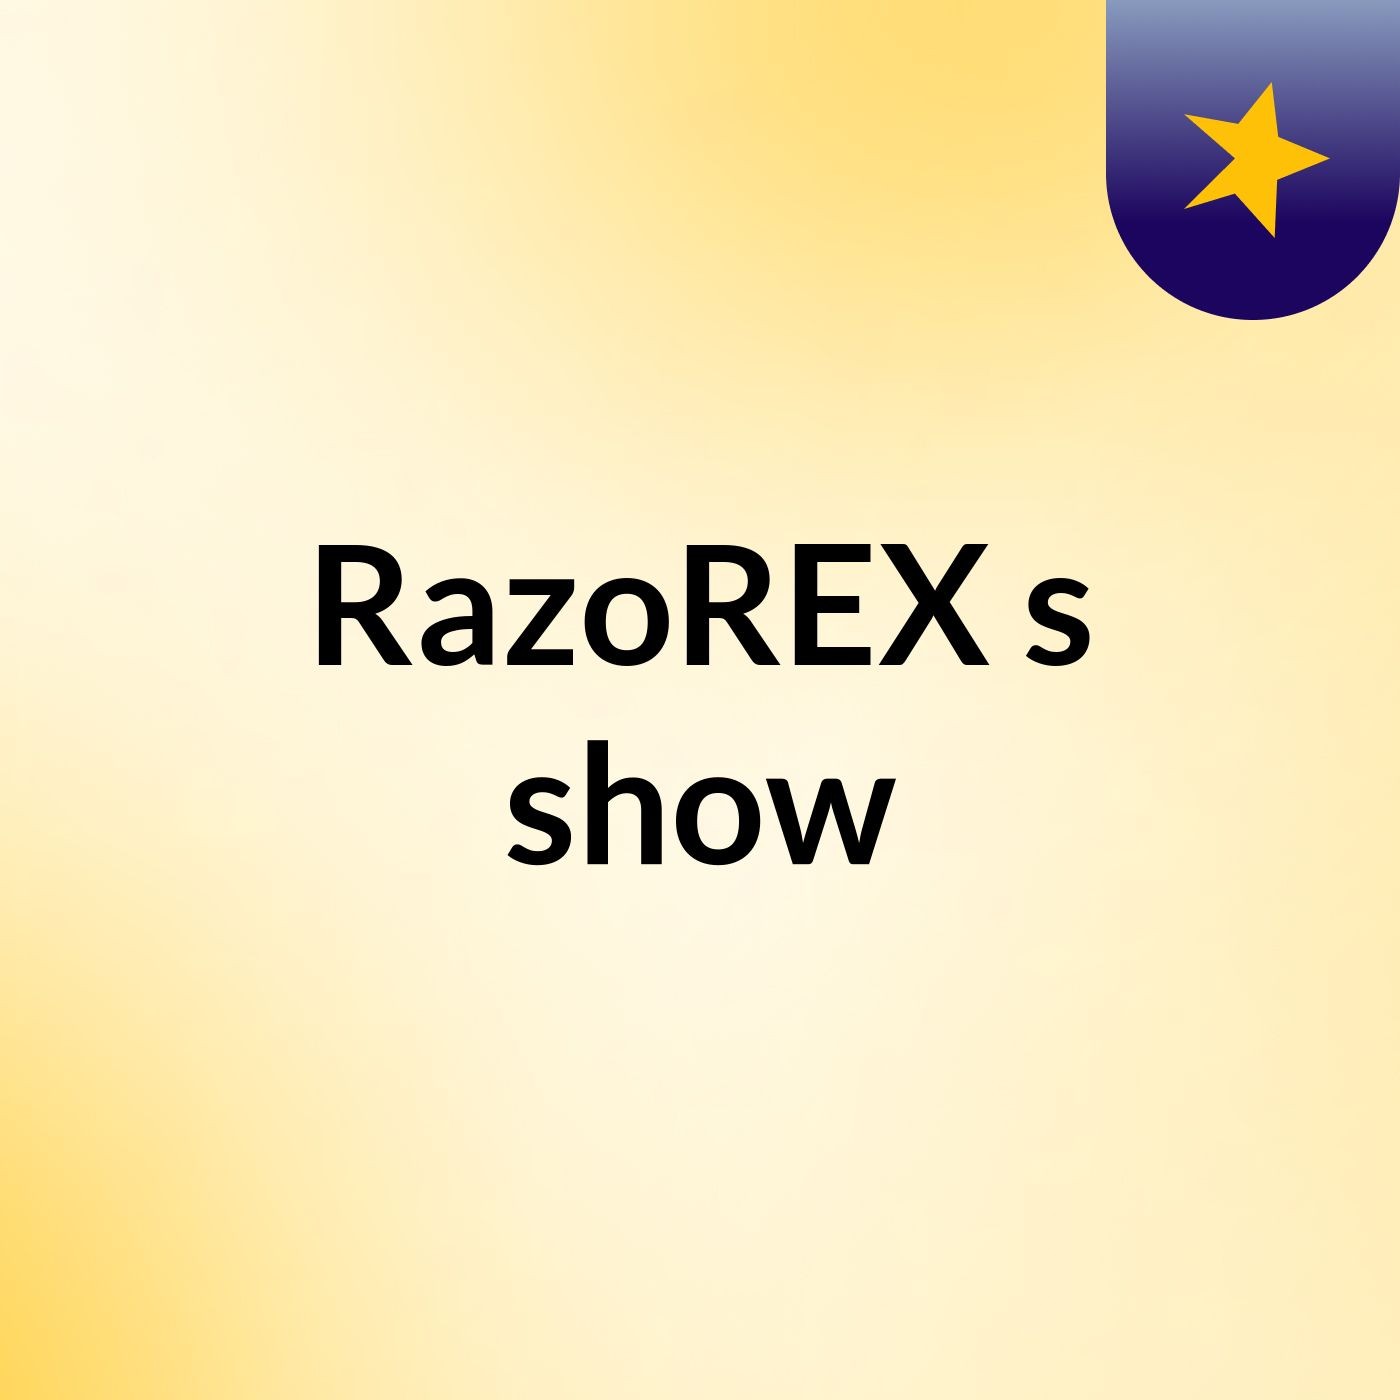 RazoREX's show